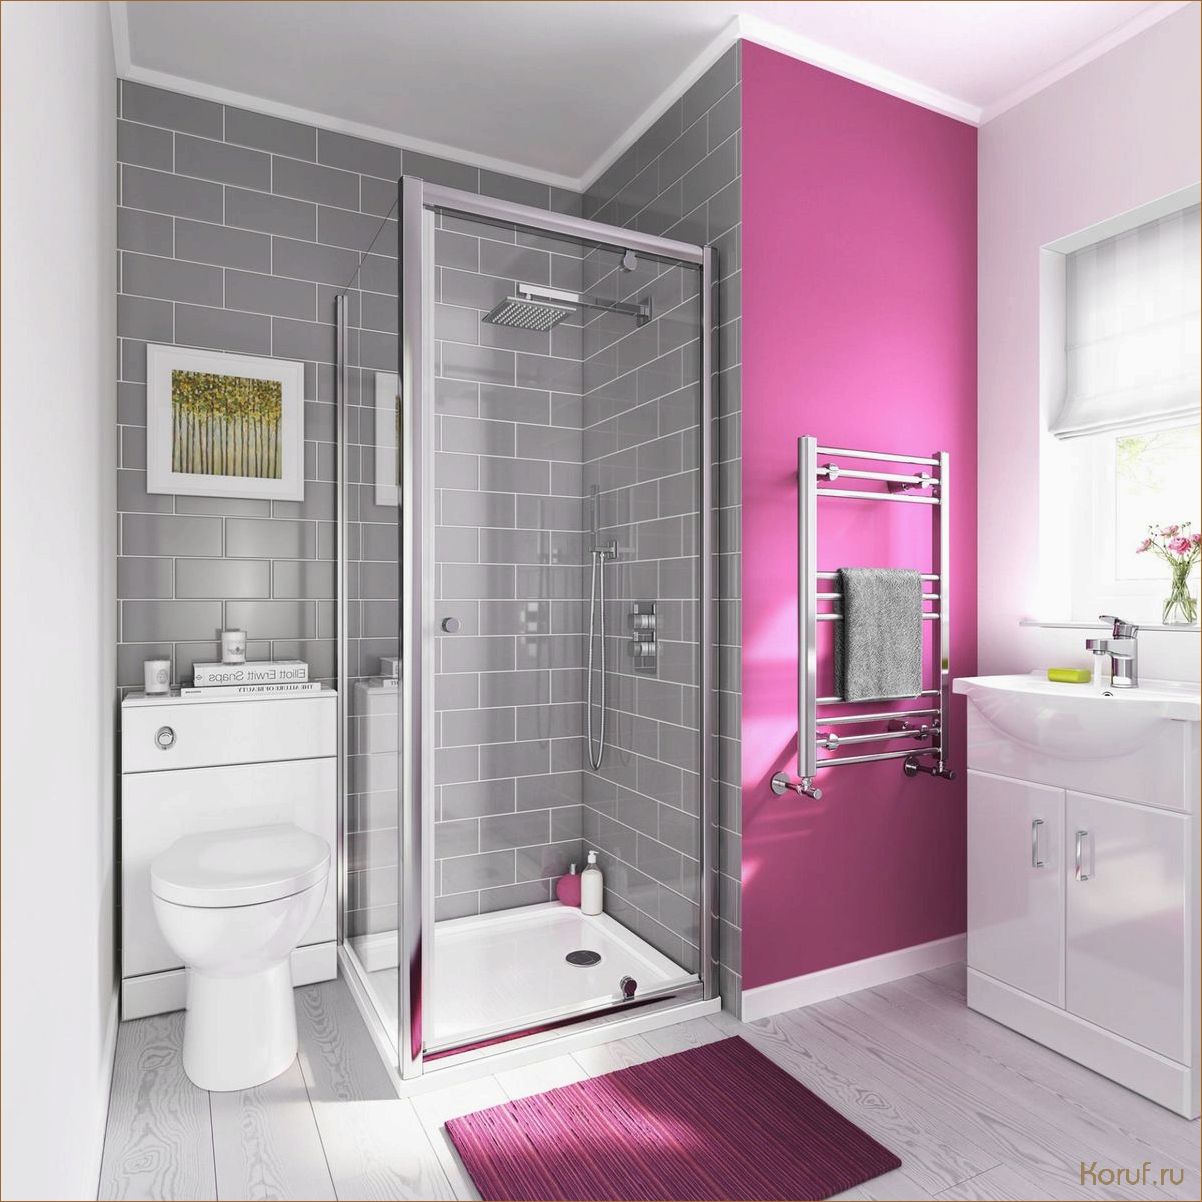 Идеальный дизайн туалета: как выбрать идеальный бачок для красивого интерьера